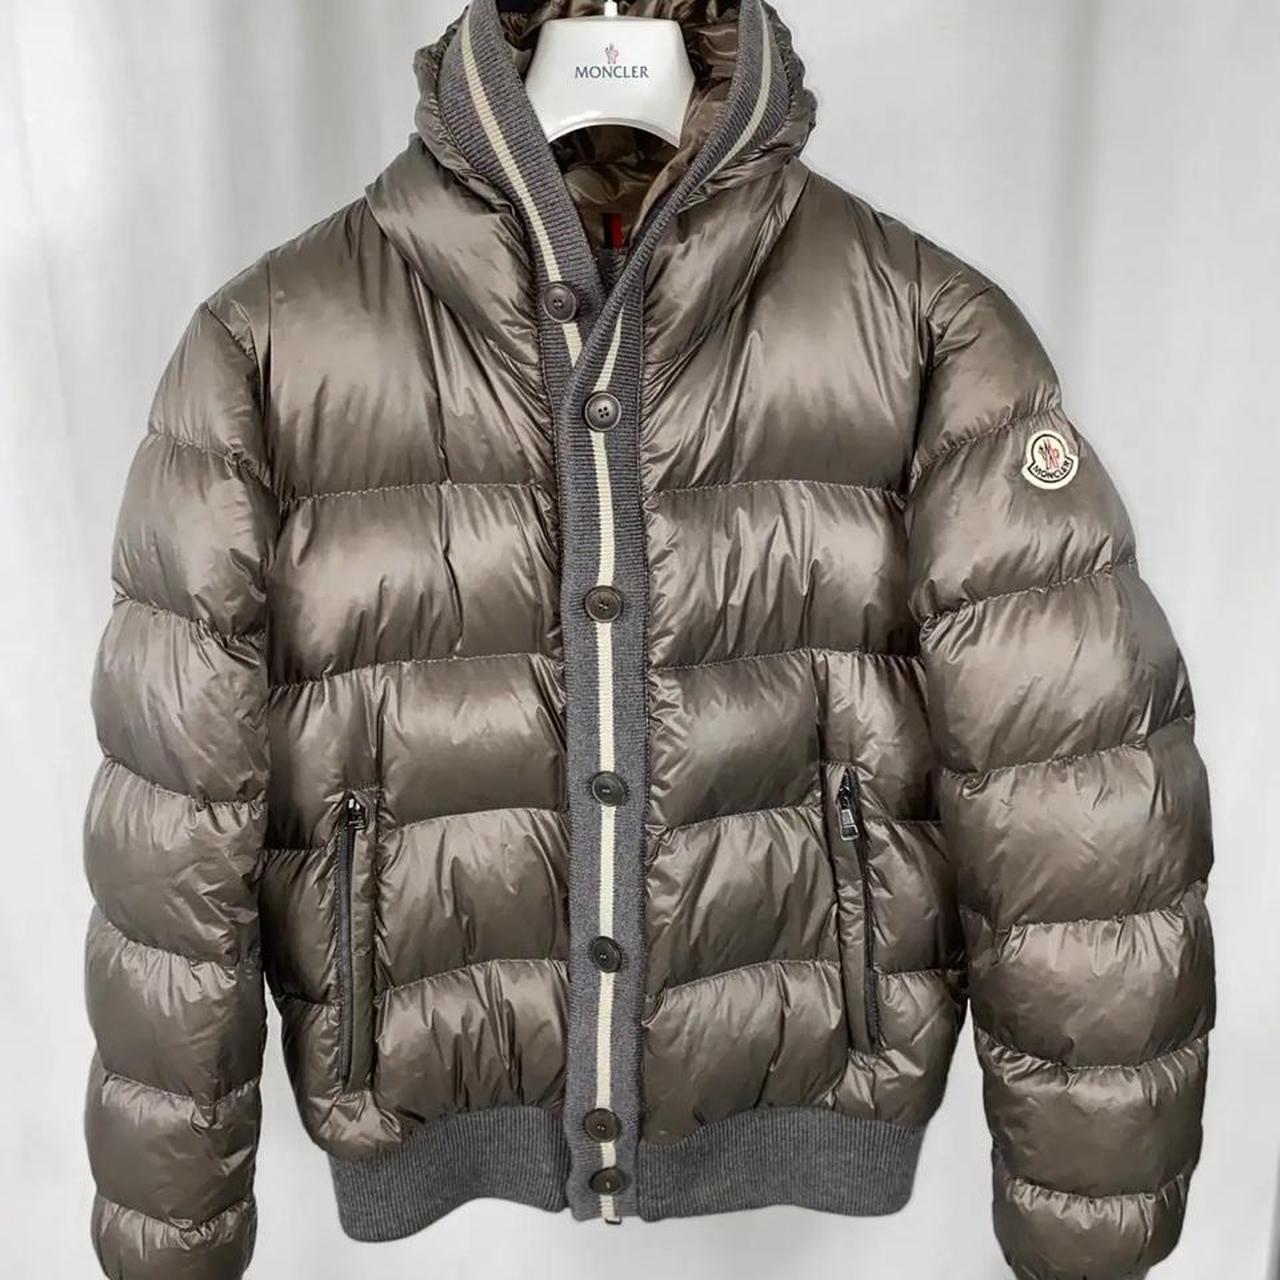 Moncler Cesar coat 100% authentic Size 3 - will... - Depop